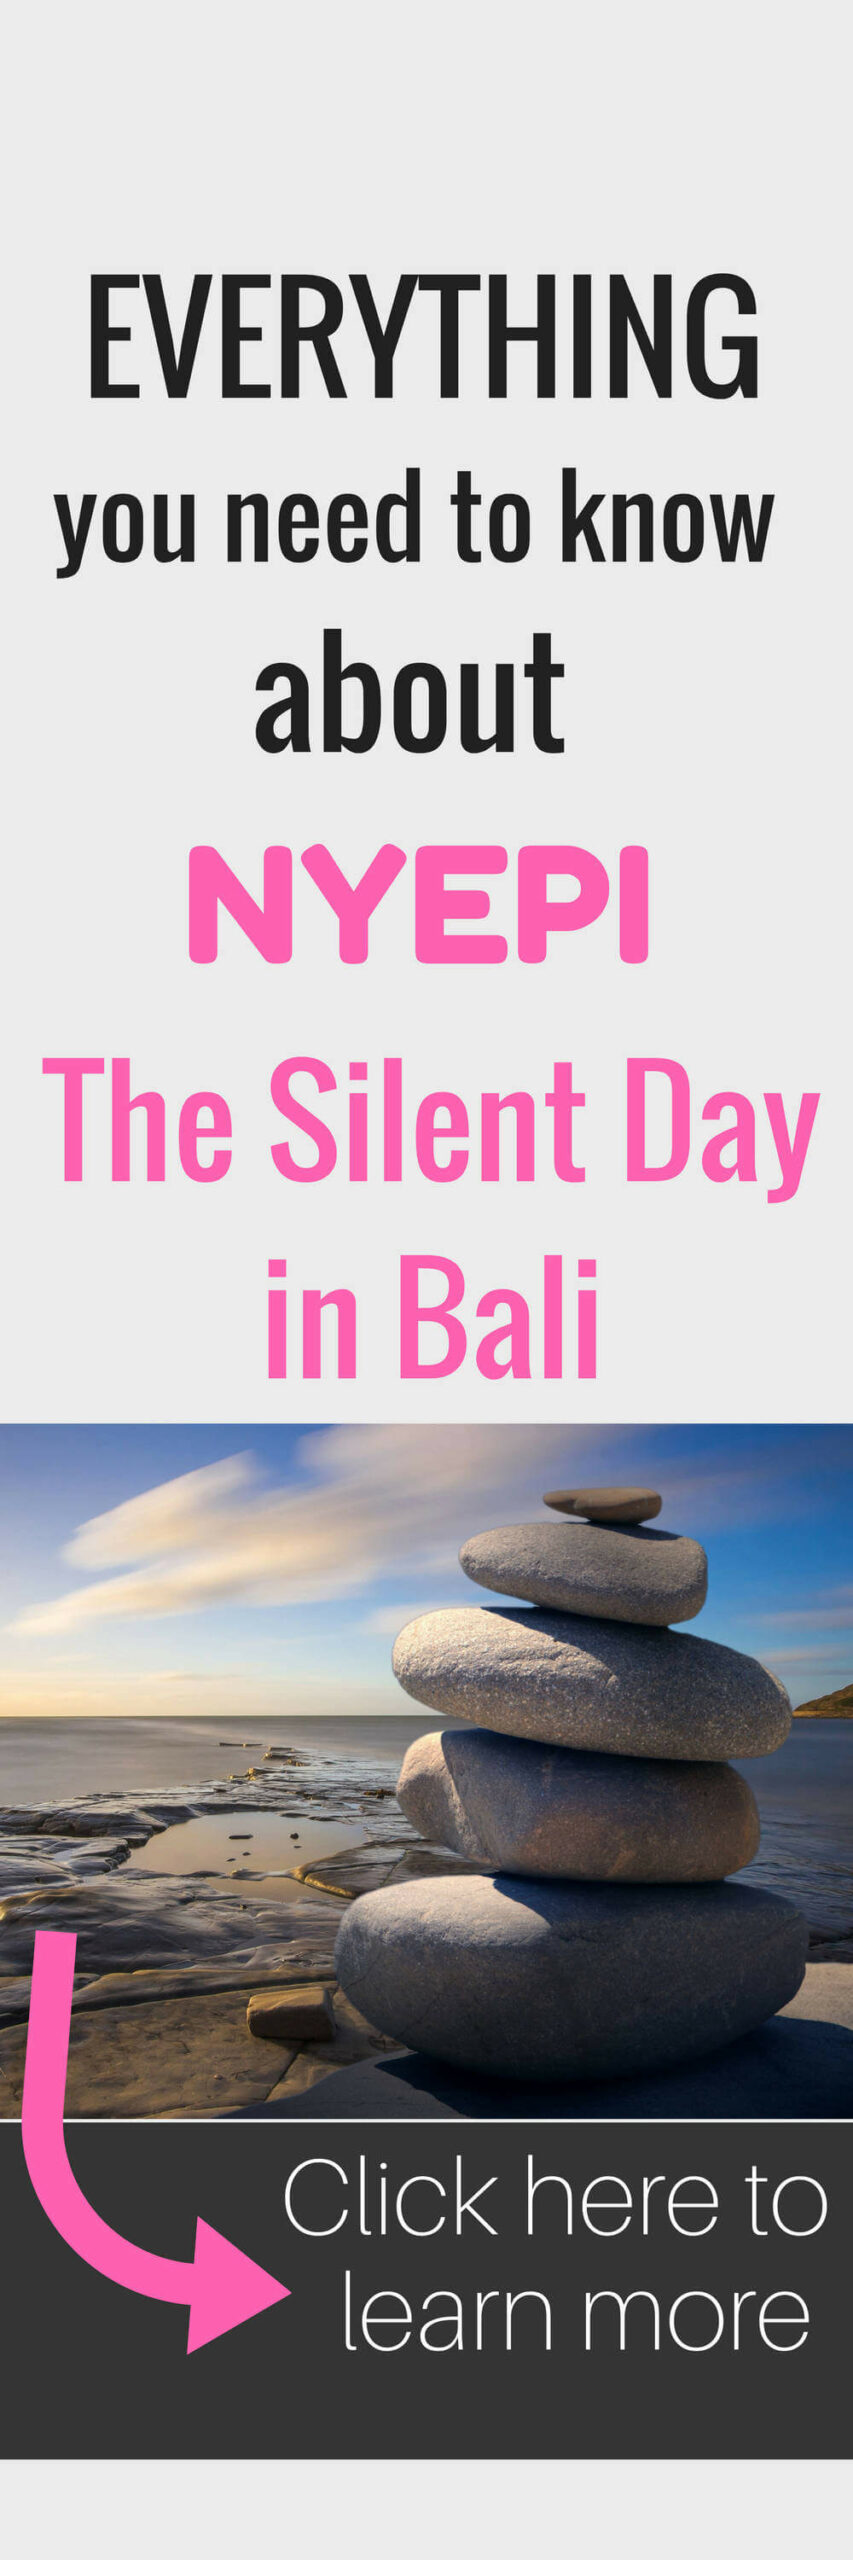 Nyepi - Le Jour Silencieux De Bali